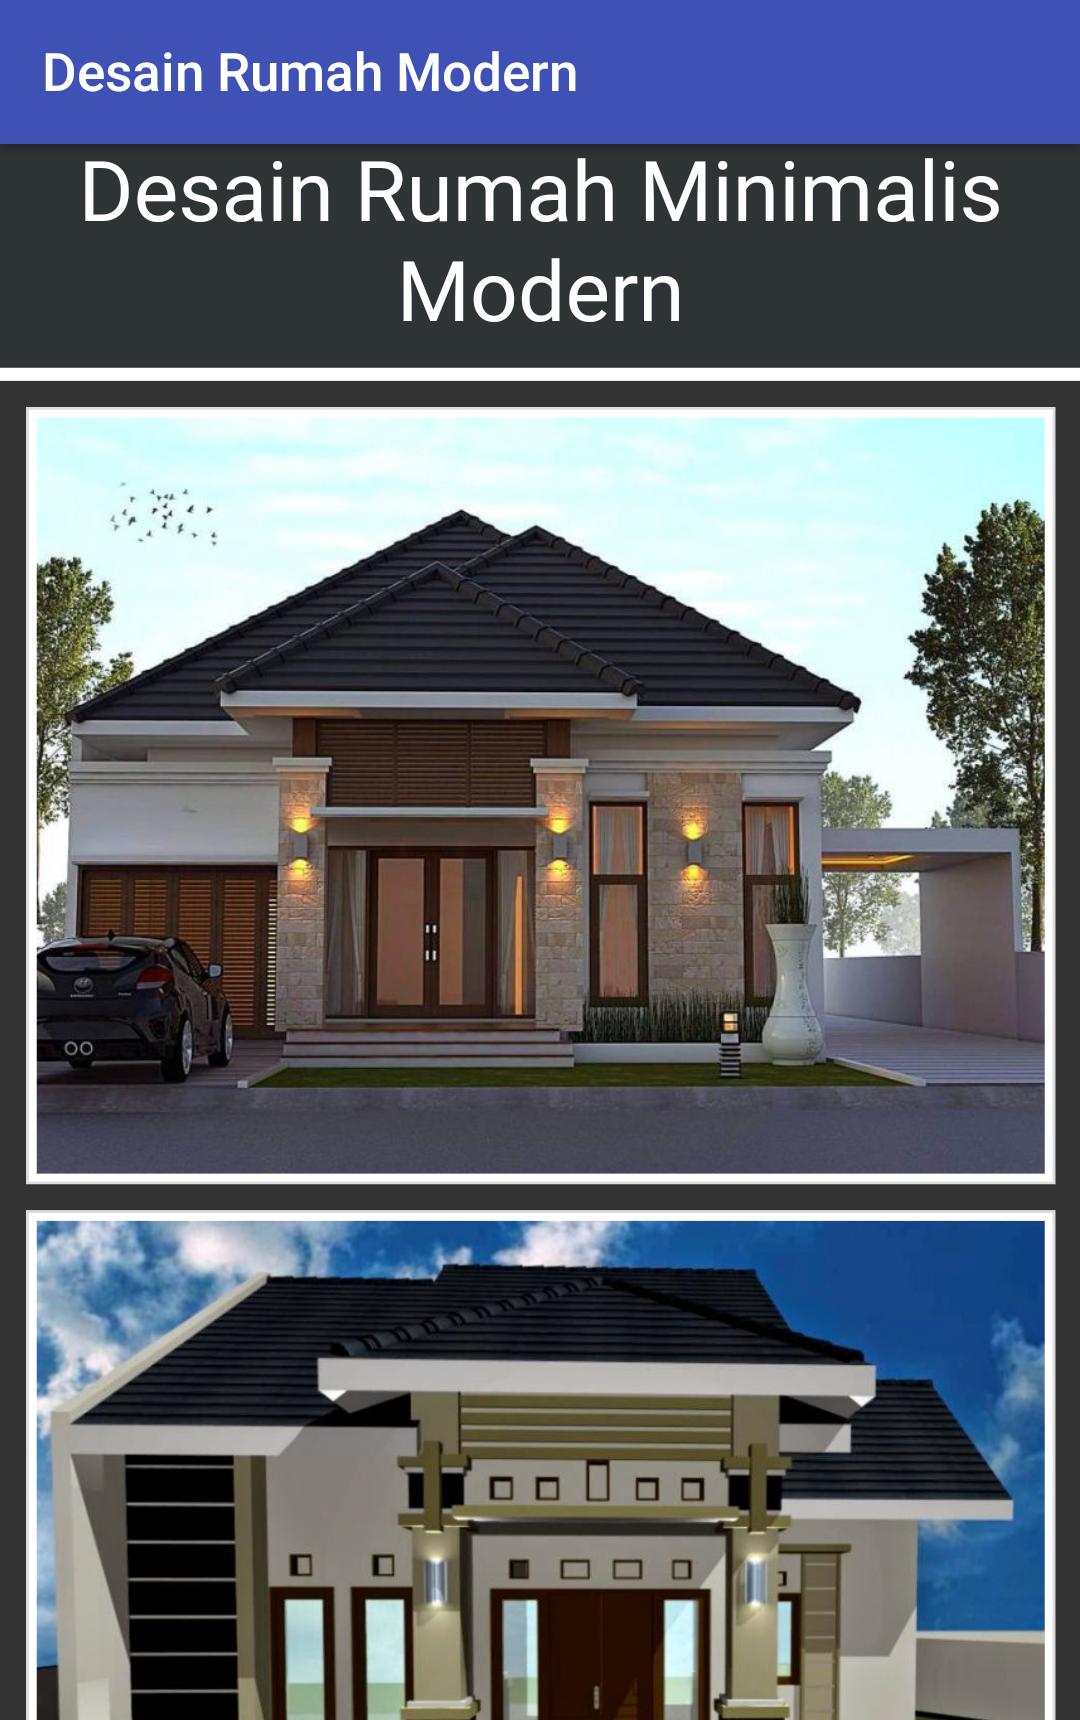 Desain Rumah Minimalis For Android APK Download